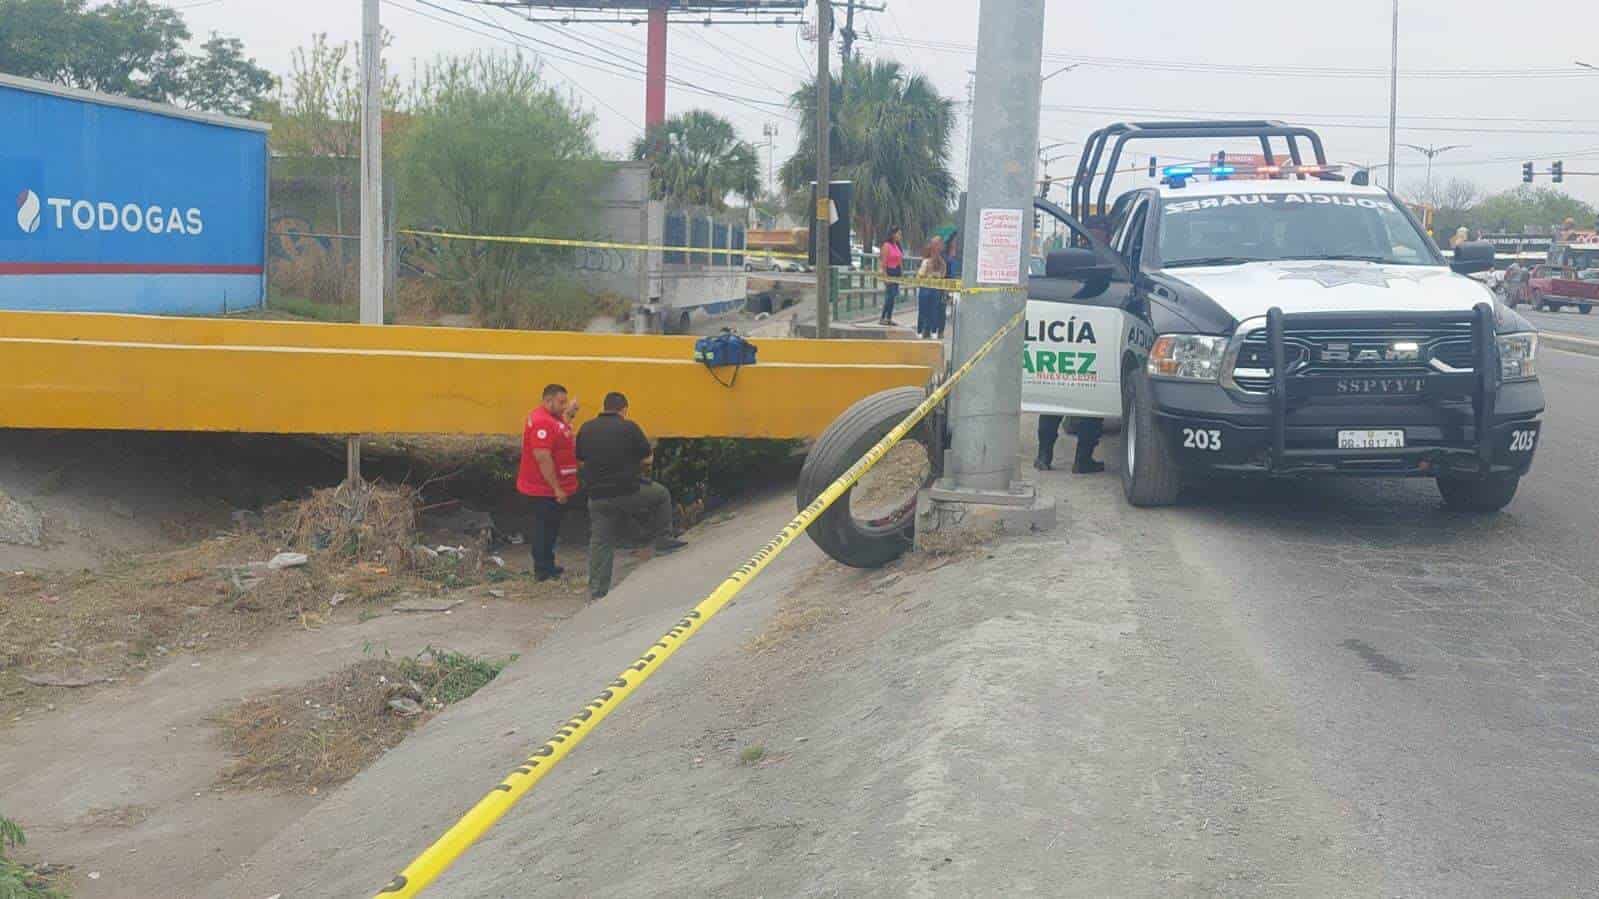 Una intensa movilización policiaca se registró en el municipio de Juárez, al reportarse el hallazgo de una persona sin vida debajo de un puente vehicular